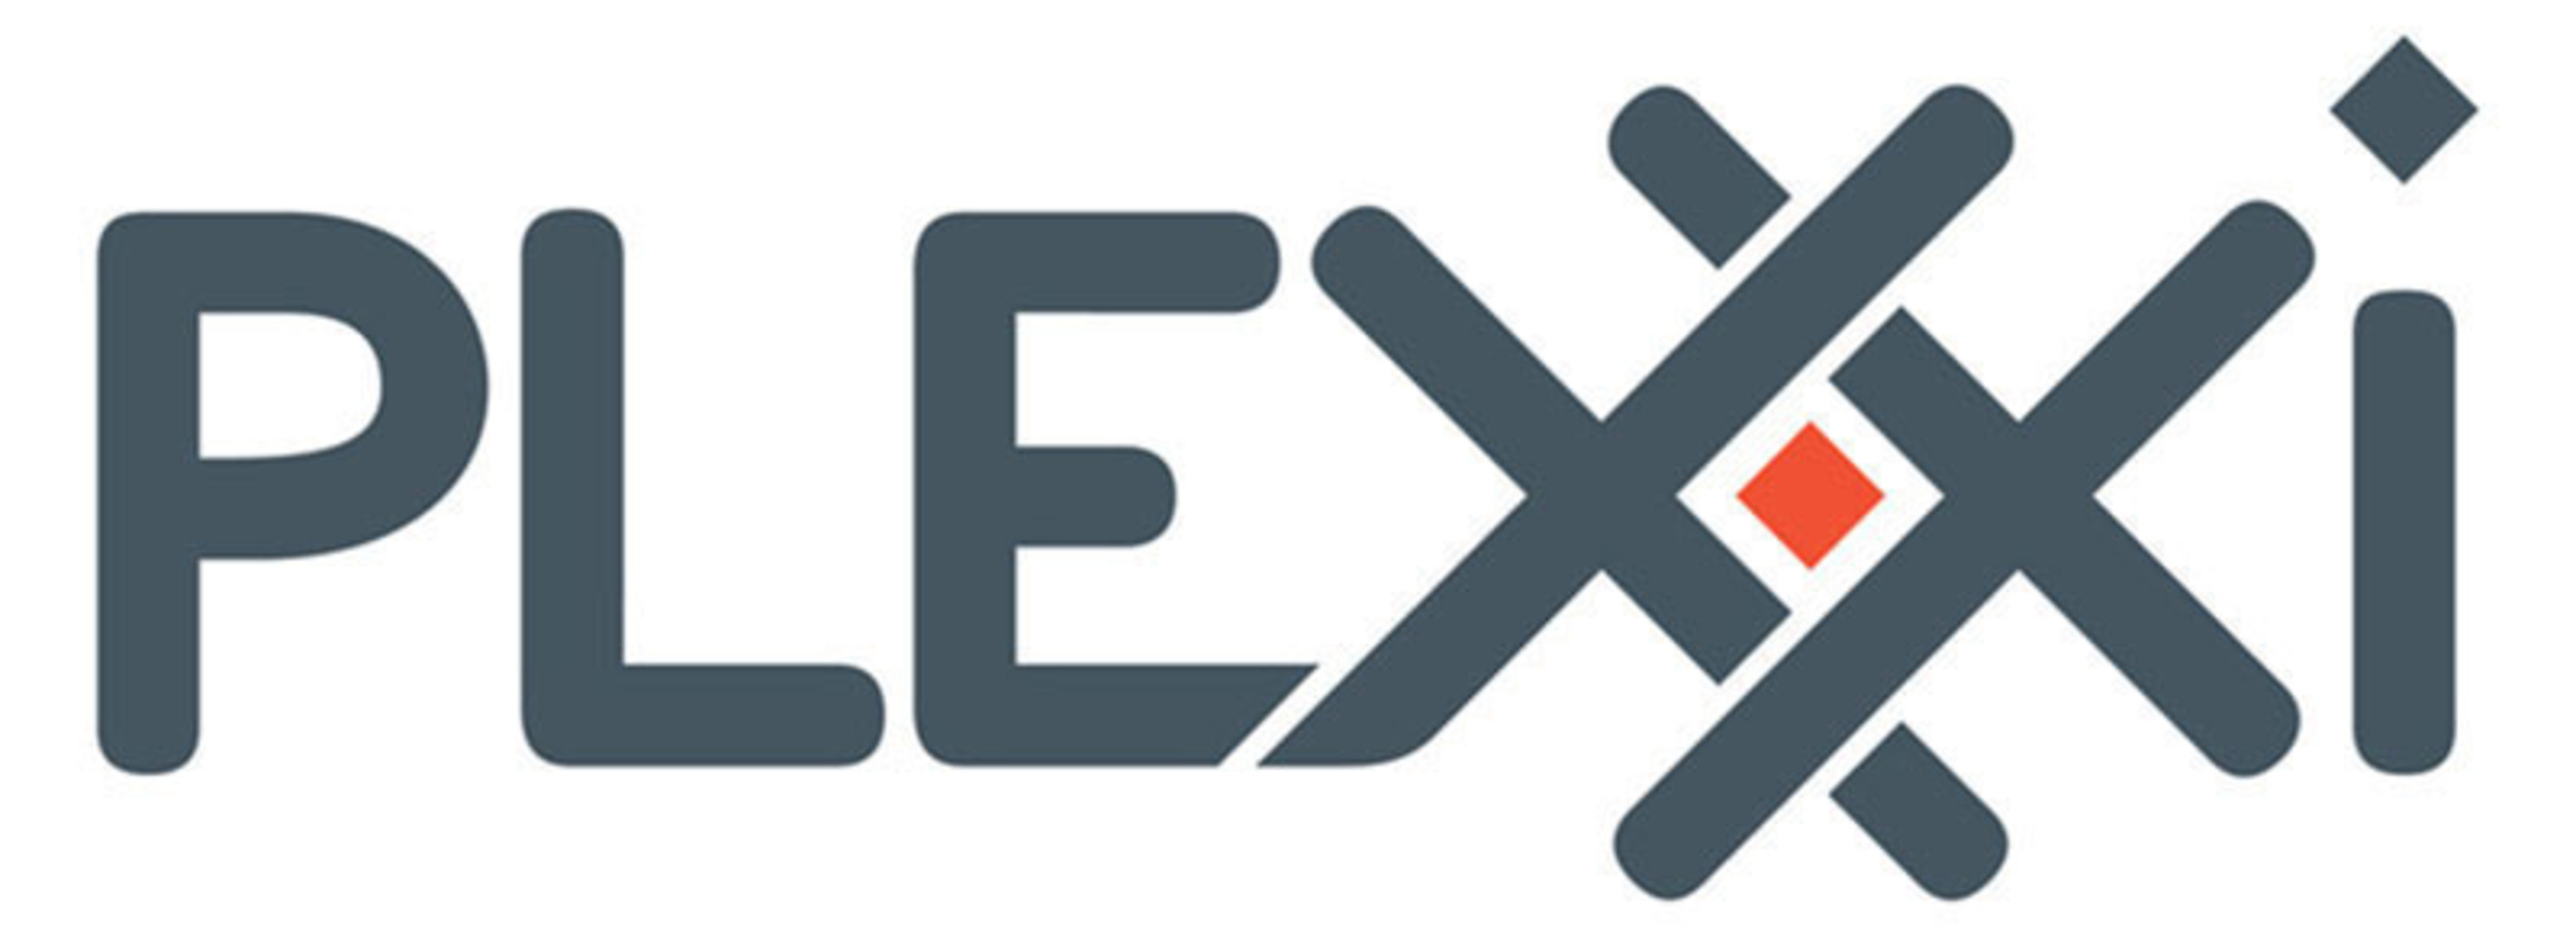 Plexxi logo. (PRNewsFoto/Plexxi)